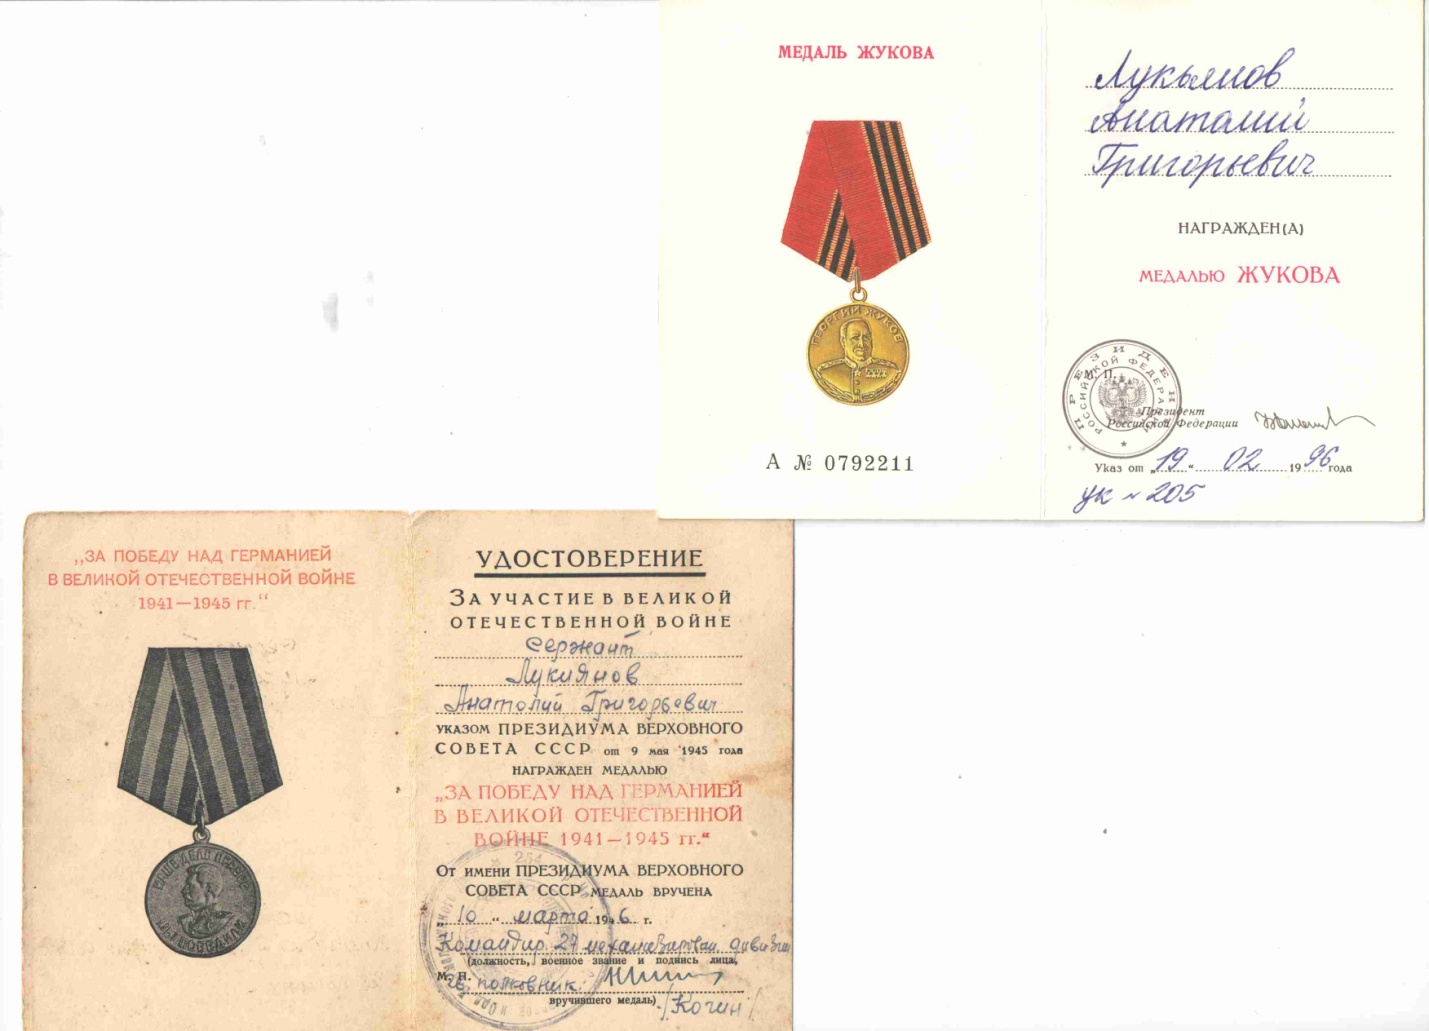 Проект История моей семьи в Великой Отечественной войне